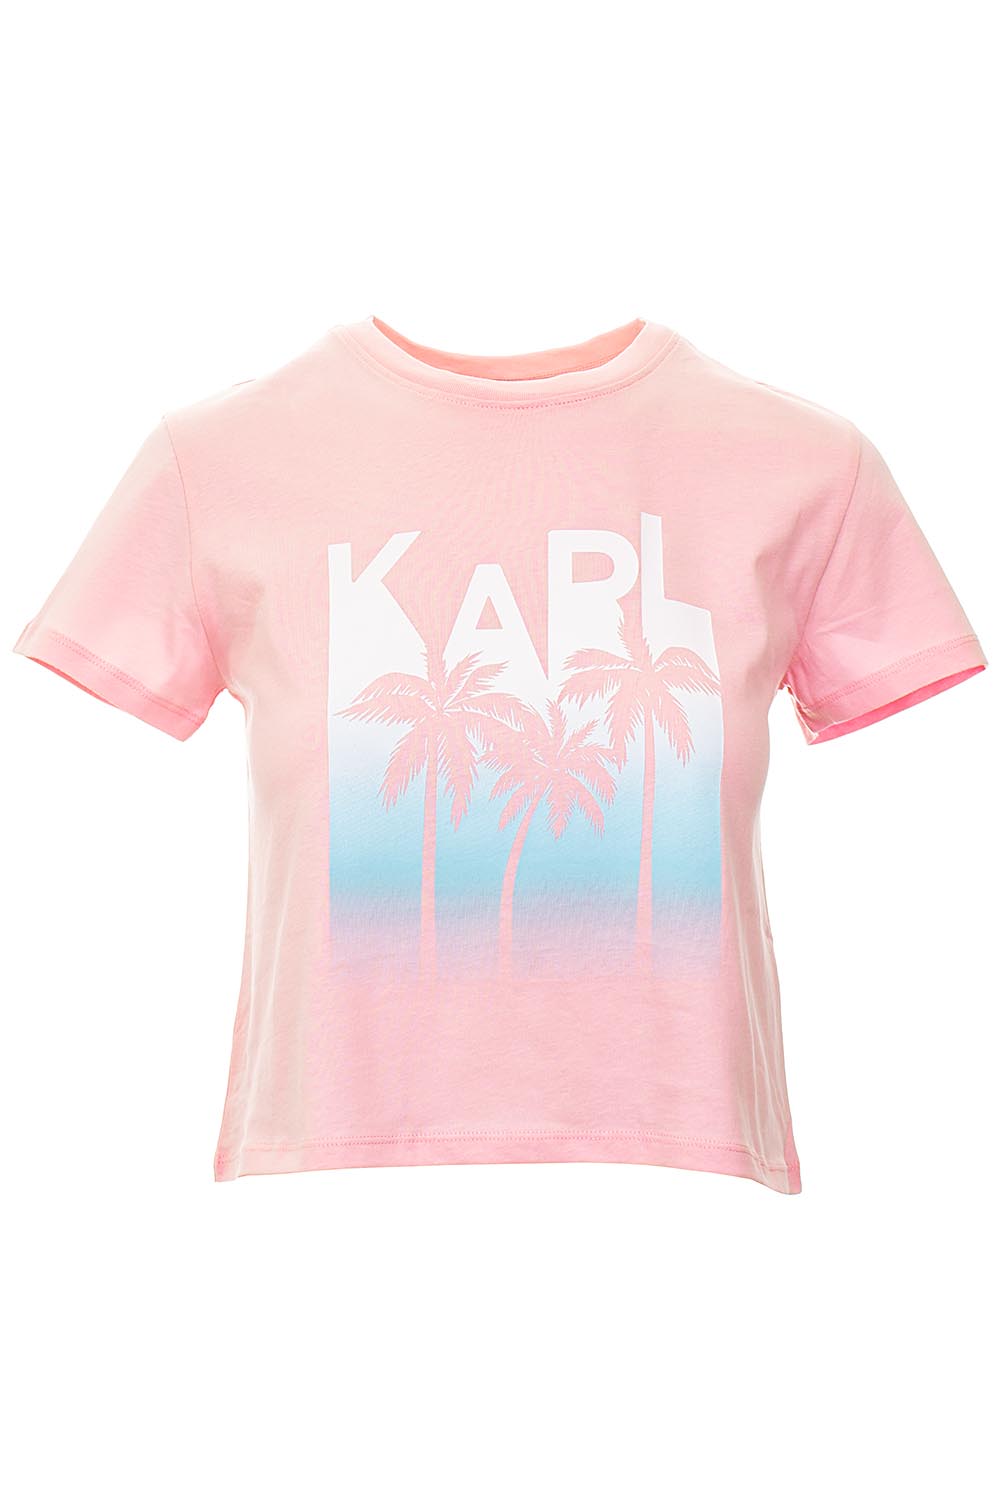 Karl Lagerfeld dámské tričko Crop Top růžové Velikost: XS